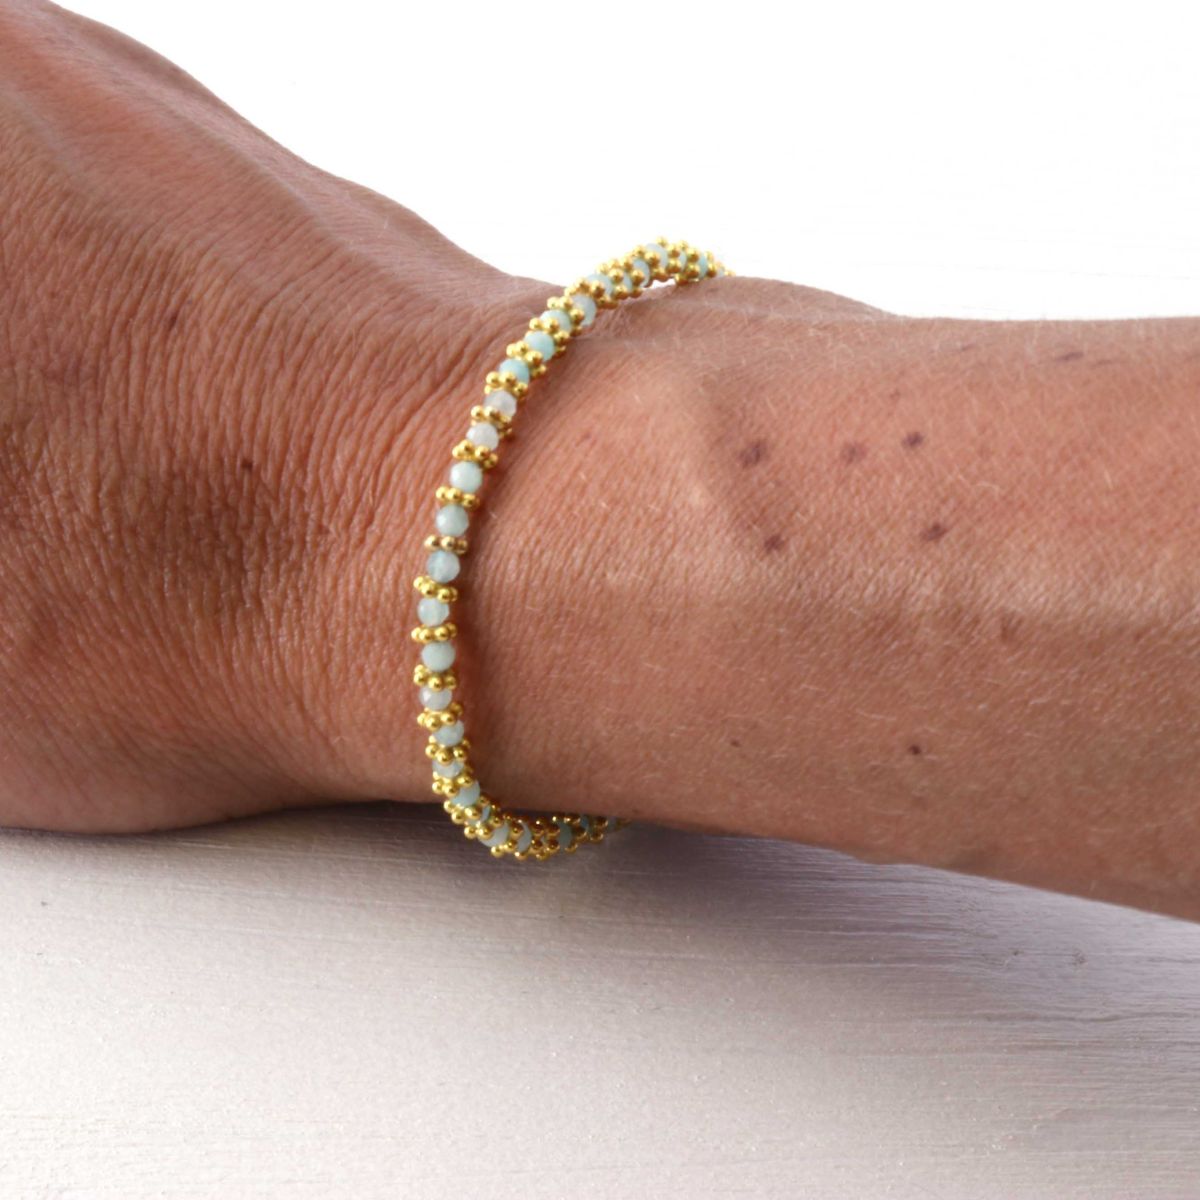 a woman wearing an amazonite bracelet on her wrist